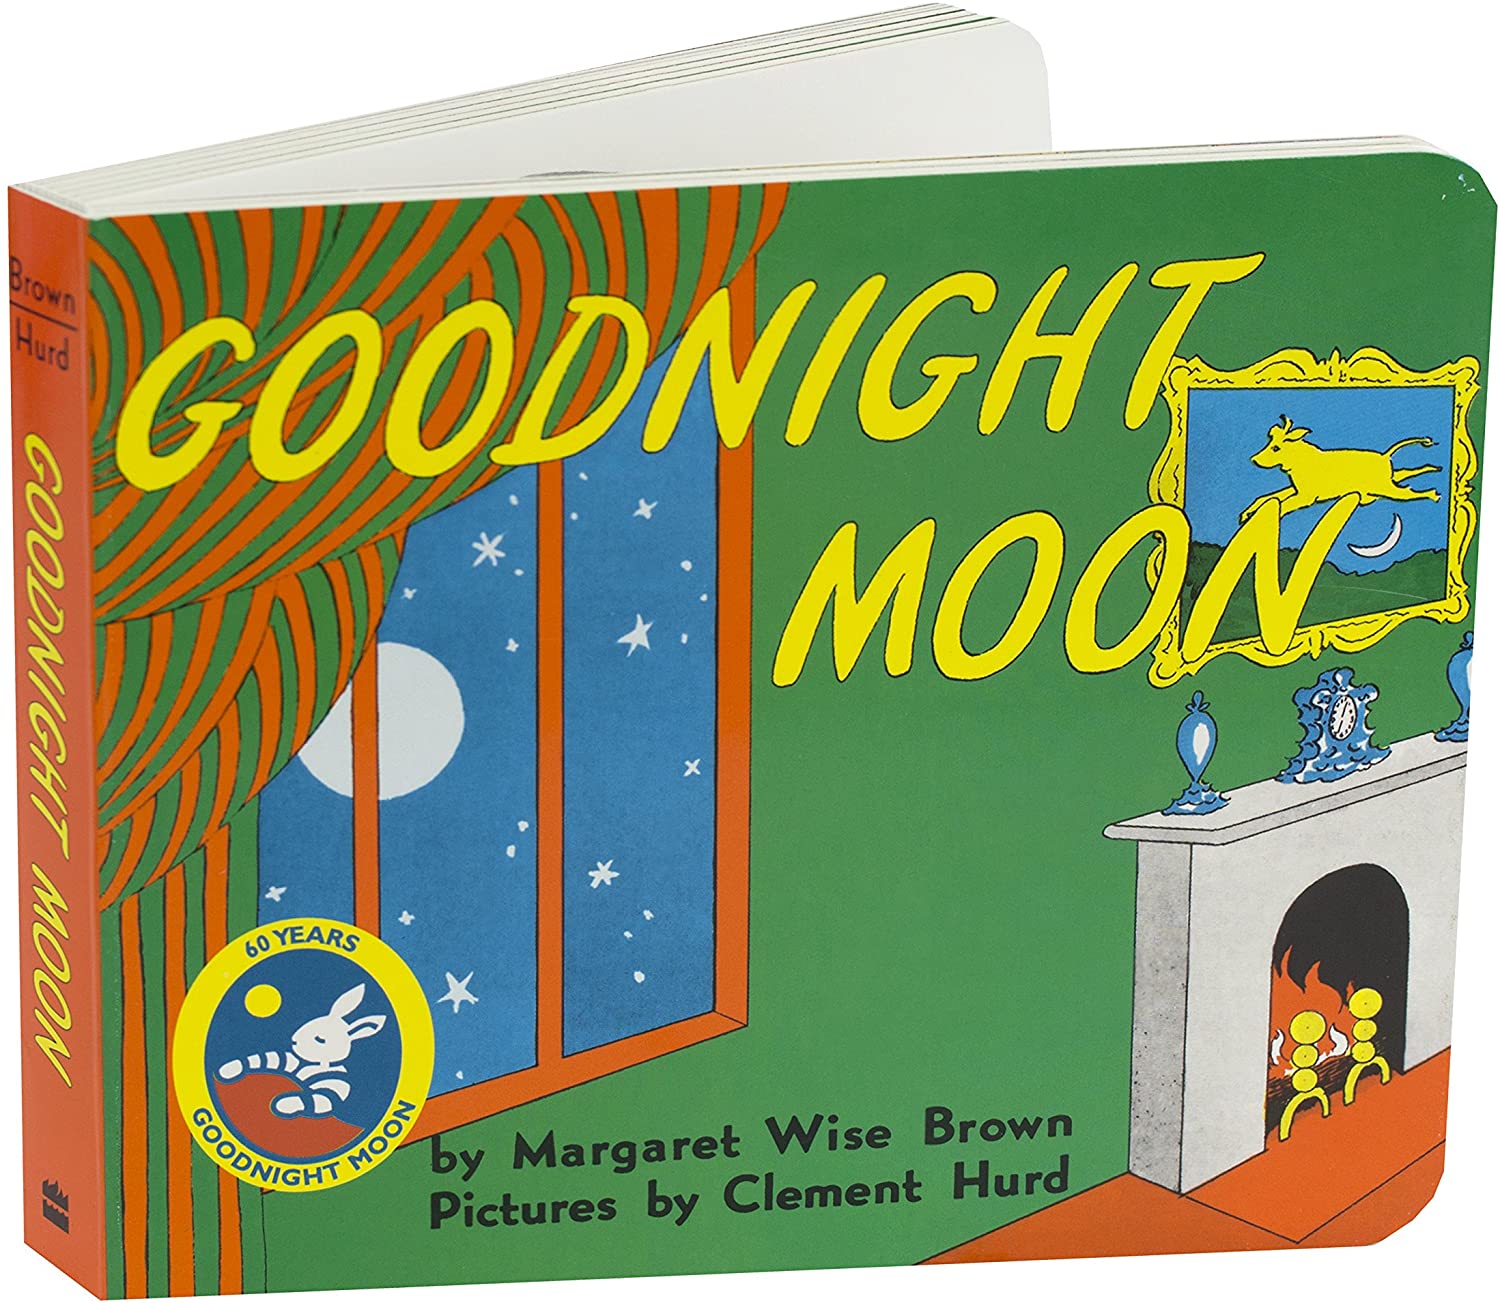 2. 'Goodnight, Moon'